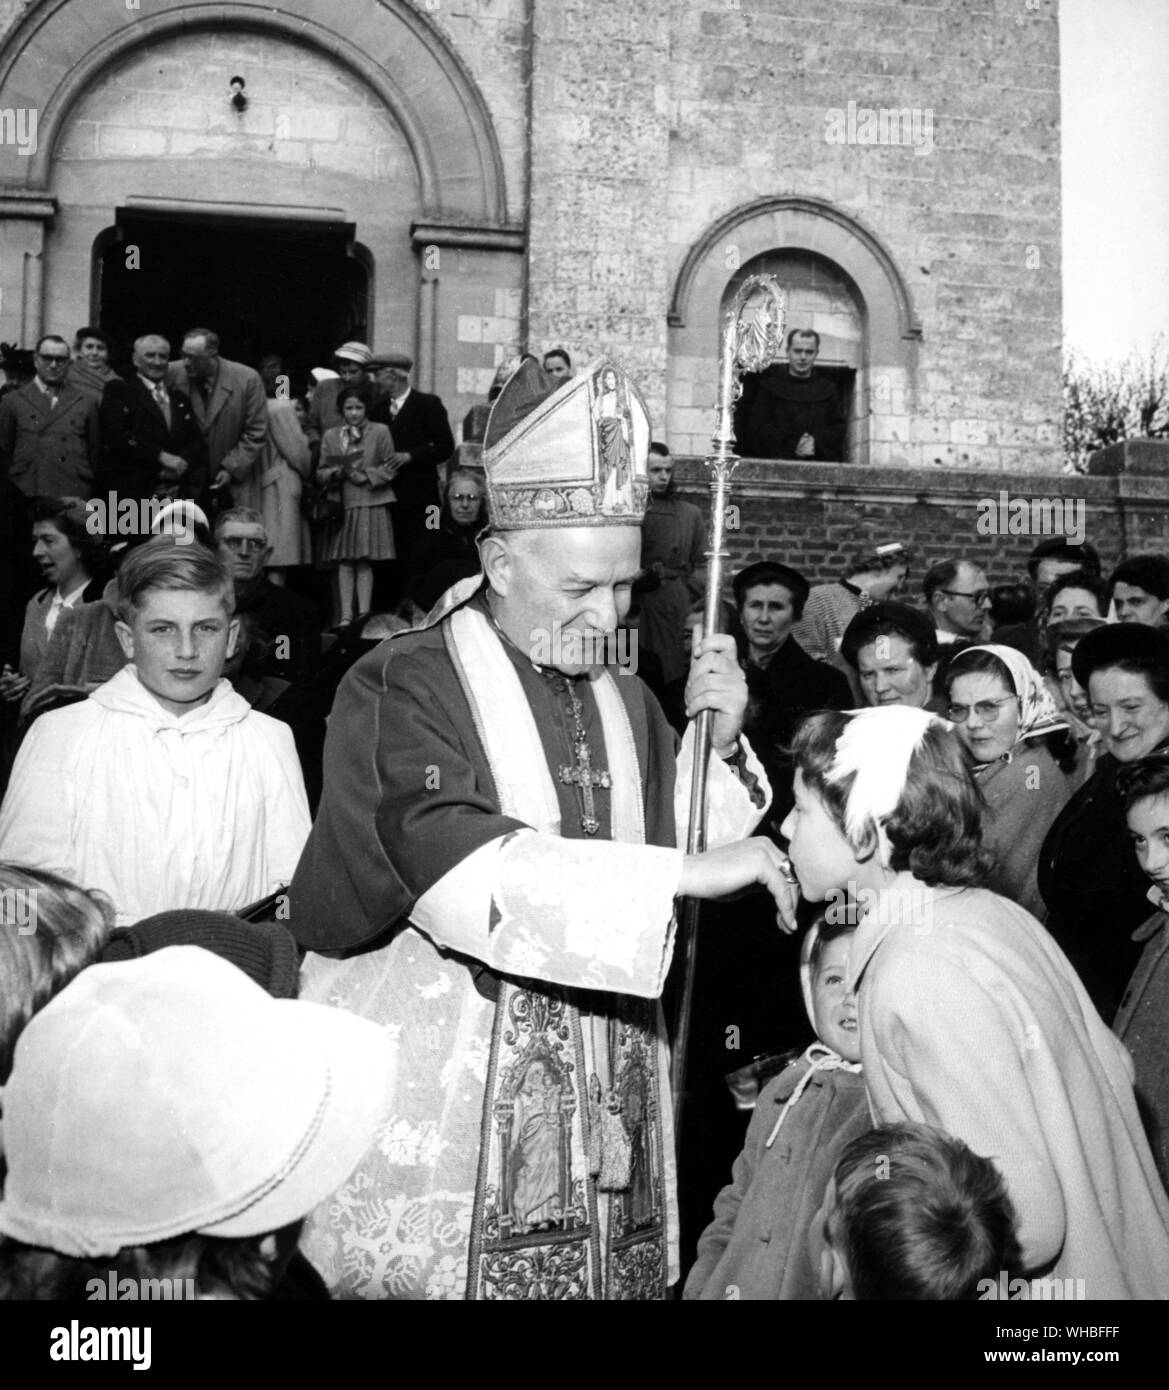 L'évêque catholique romain d'avoir son anneau embrassé par une jeune fille entourés d'une foule de gens à l'extérieur church Banque D'Images